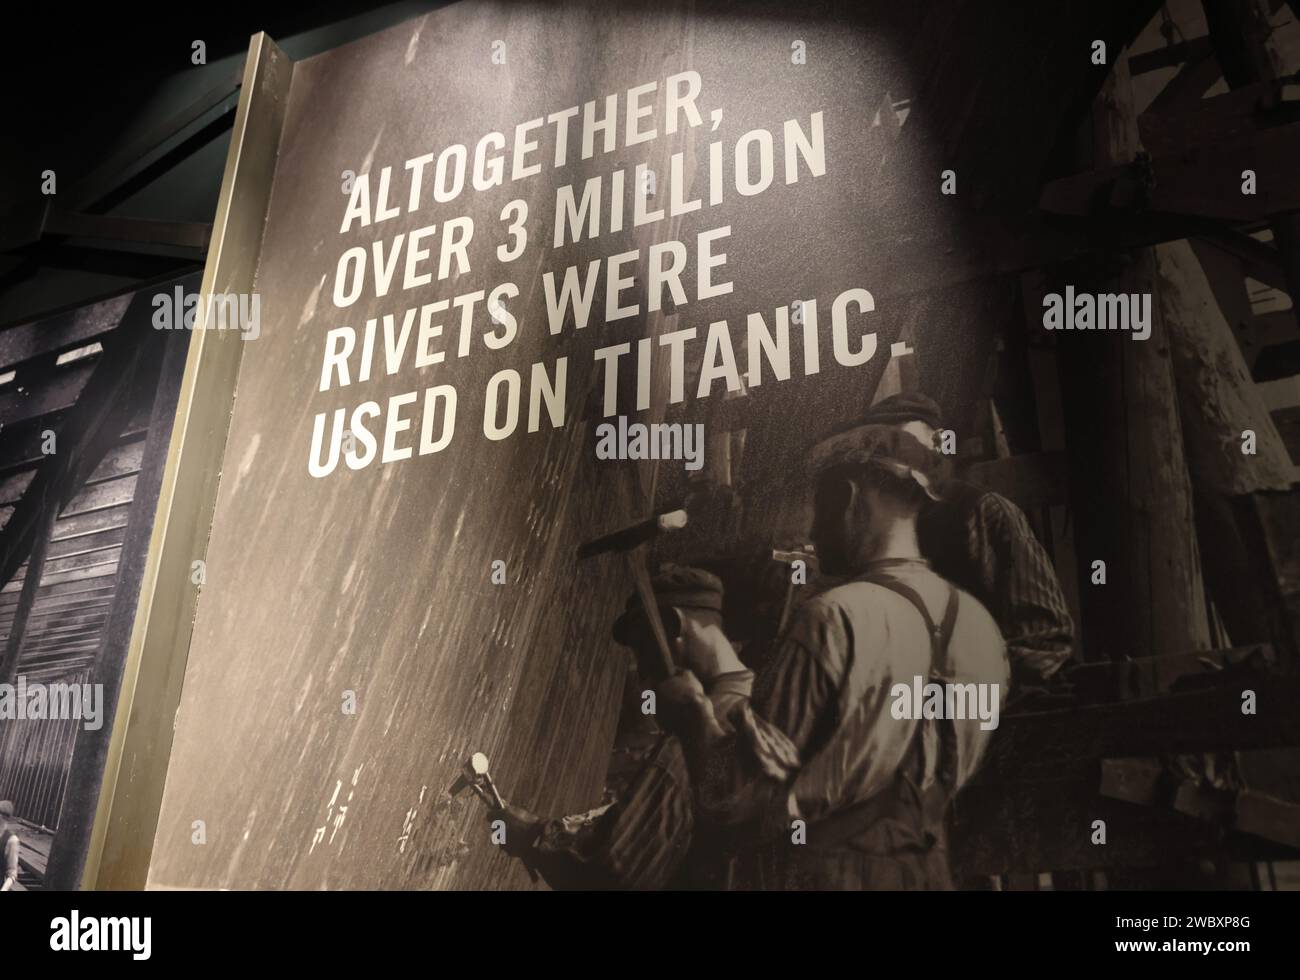 Titanic Belfast, une attraction touristique de premier plan qui raconte l'histoire du RMS Titanic depuis ses débuts jusqu'à sa fin tragique en 1912, au Royaume-Uni Banque D'Images